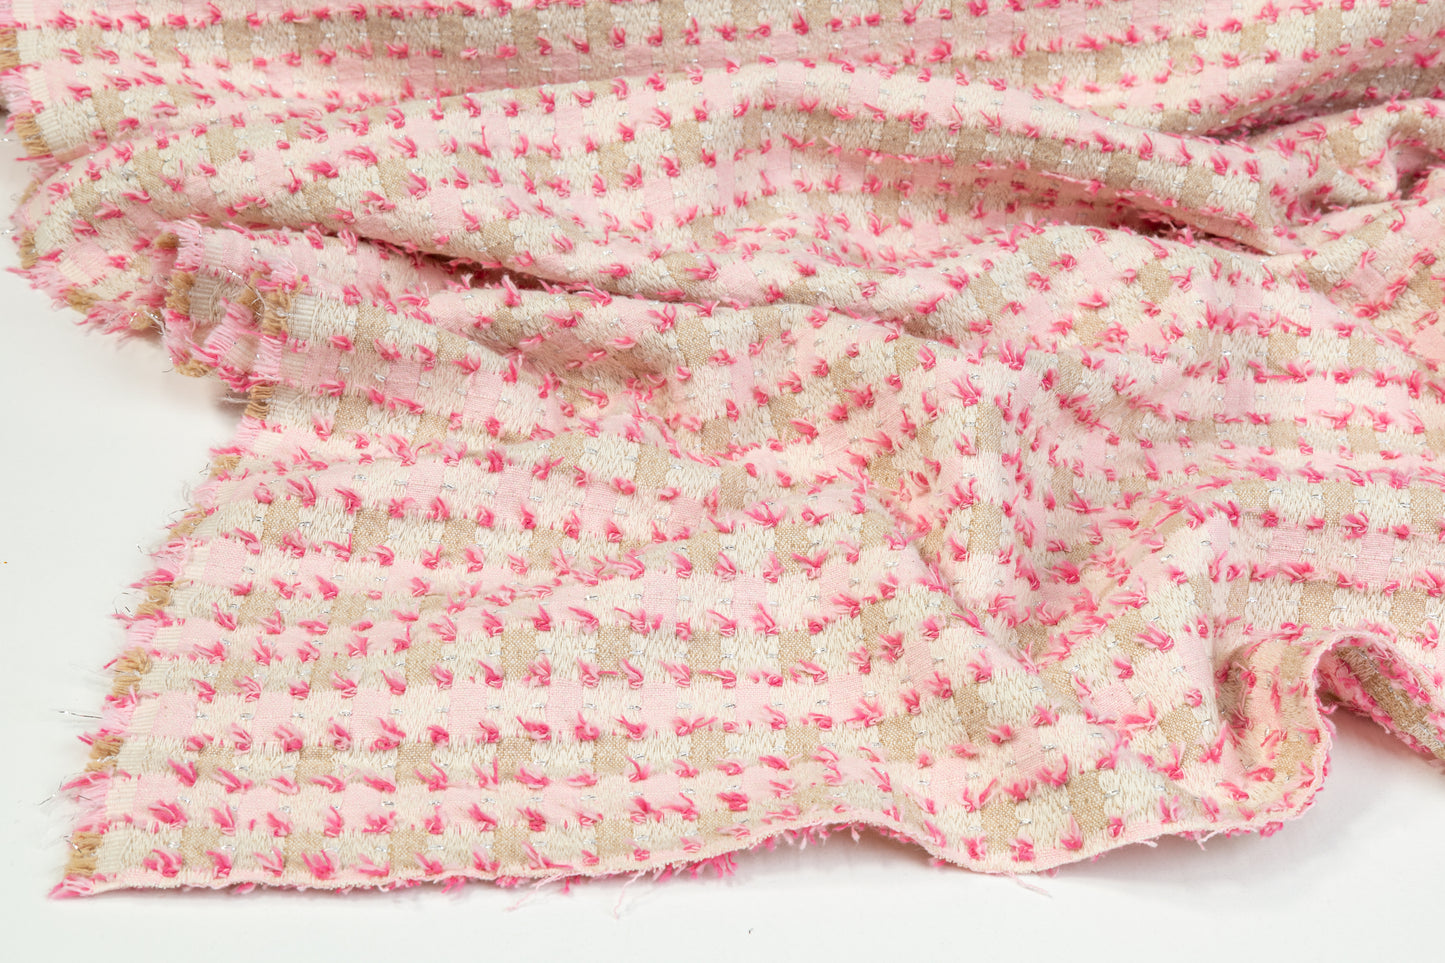 Metallic Cotton Tweed - Pink and Beige